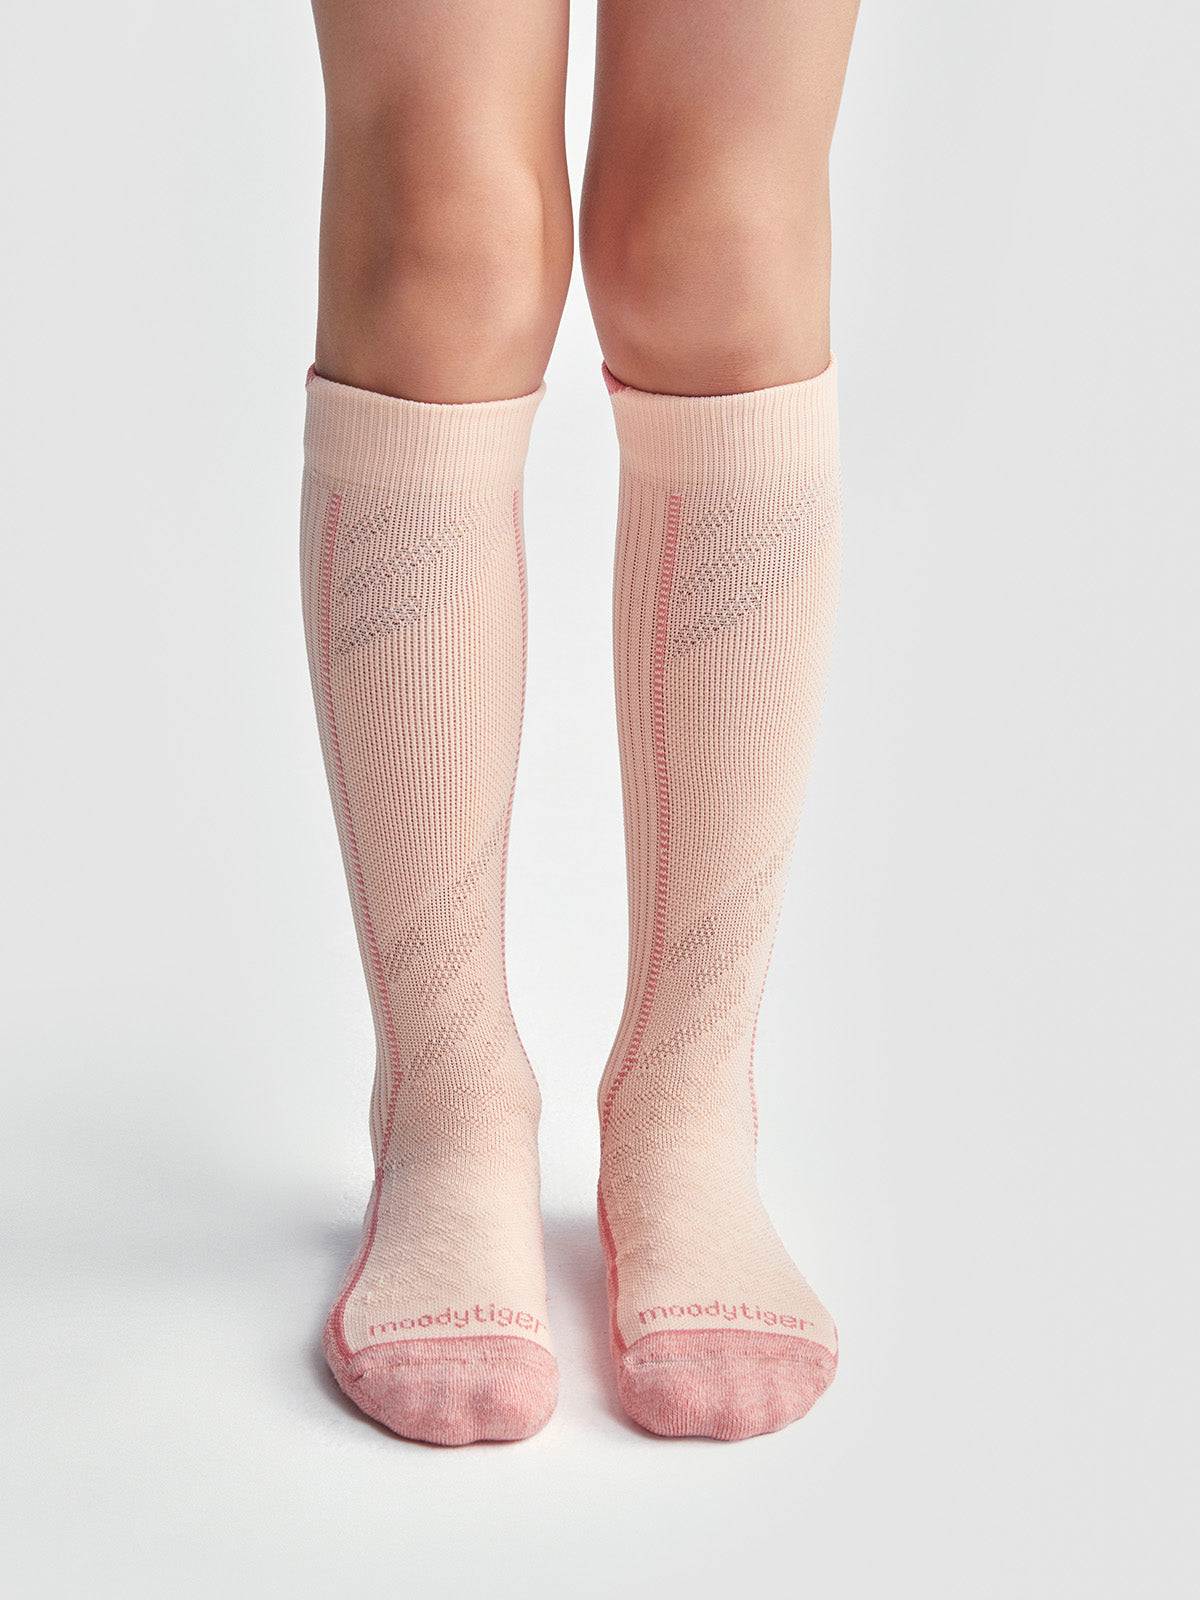 Over-The-Calf Cushion Socks